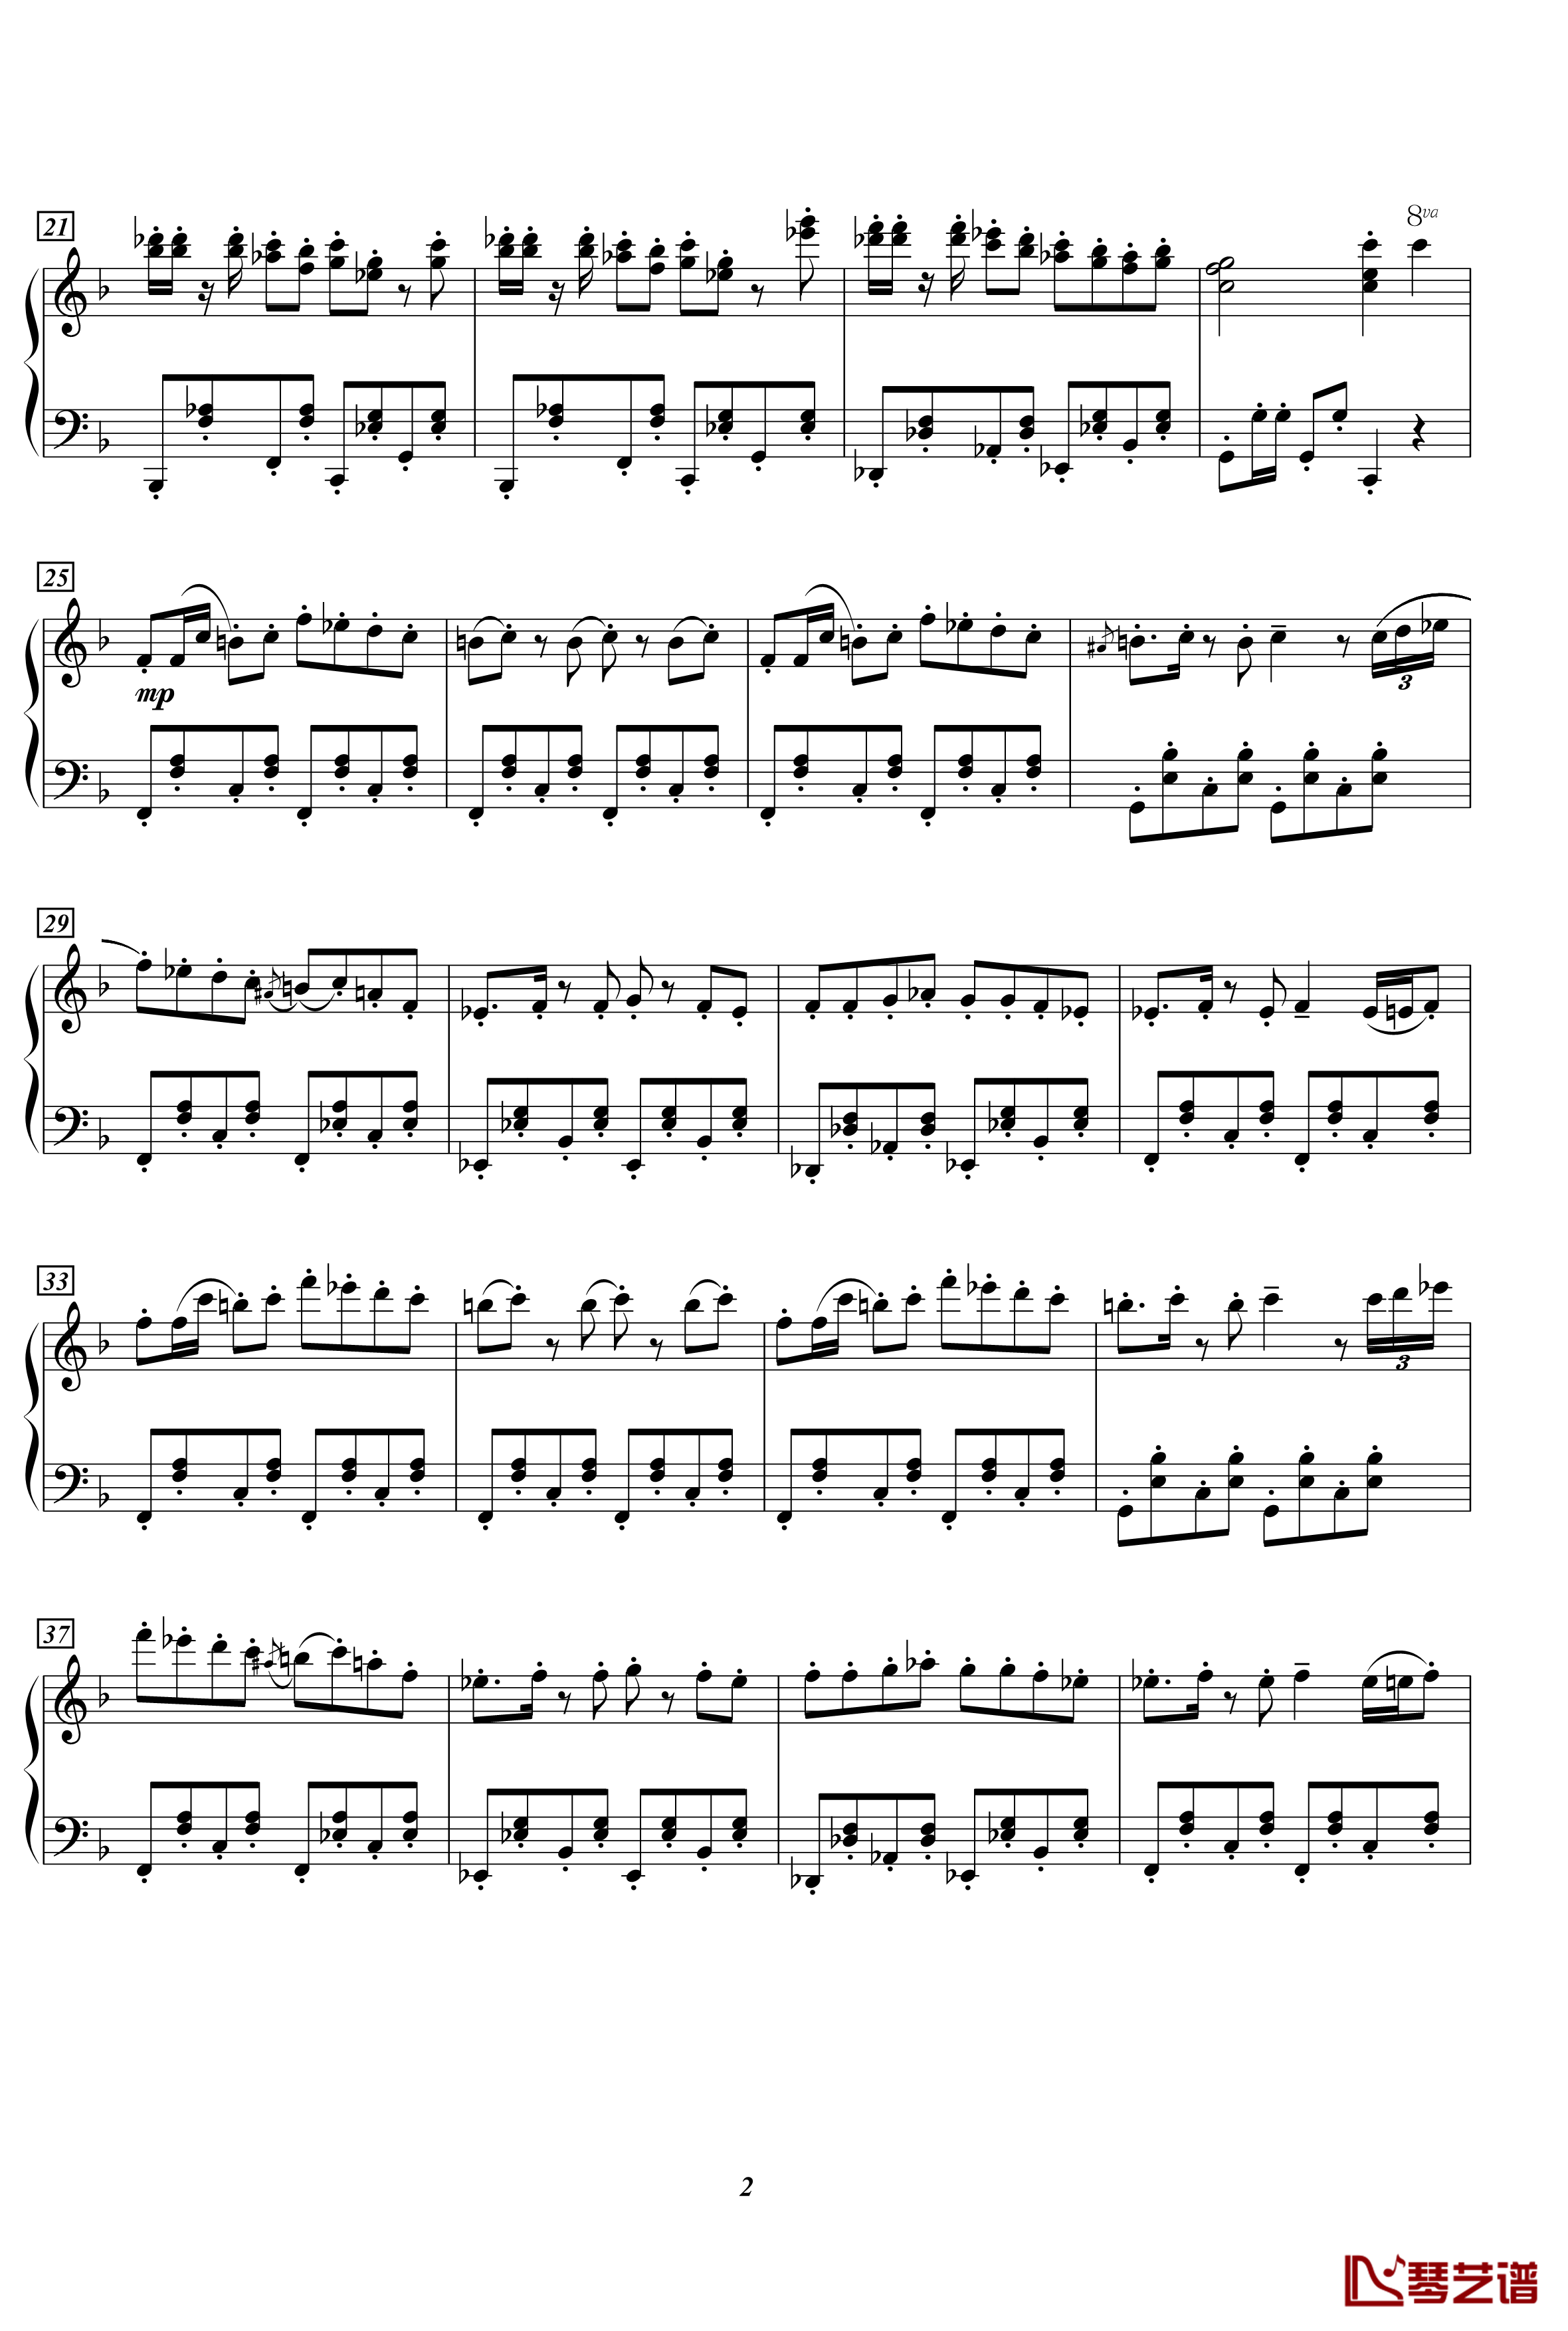 サンドキャニオン钢琴谱-10492BGM-星之卡比2